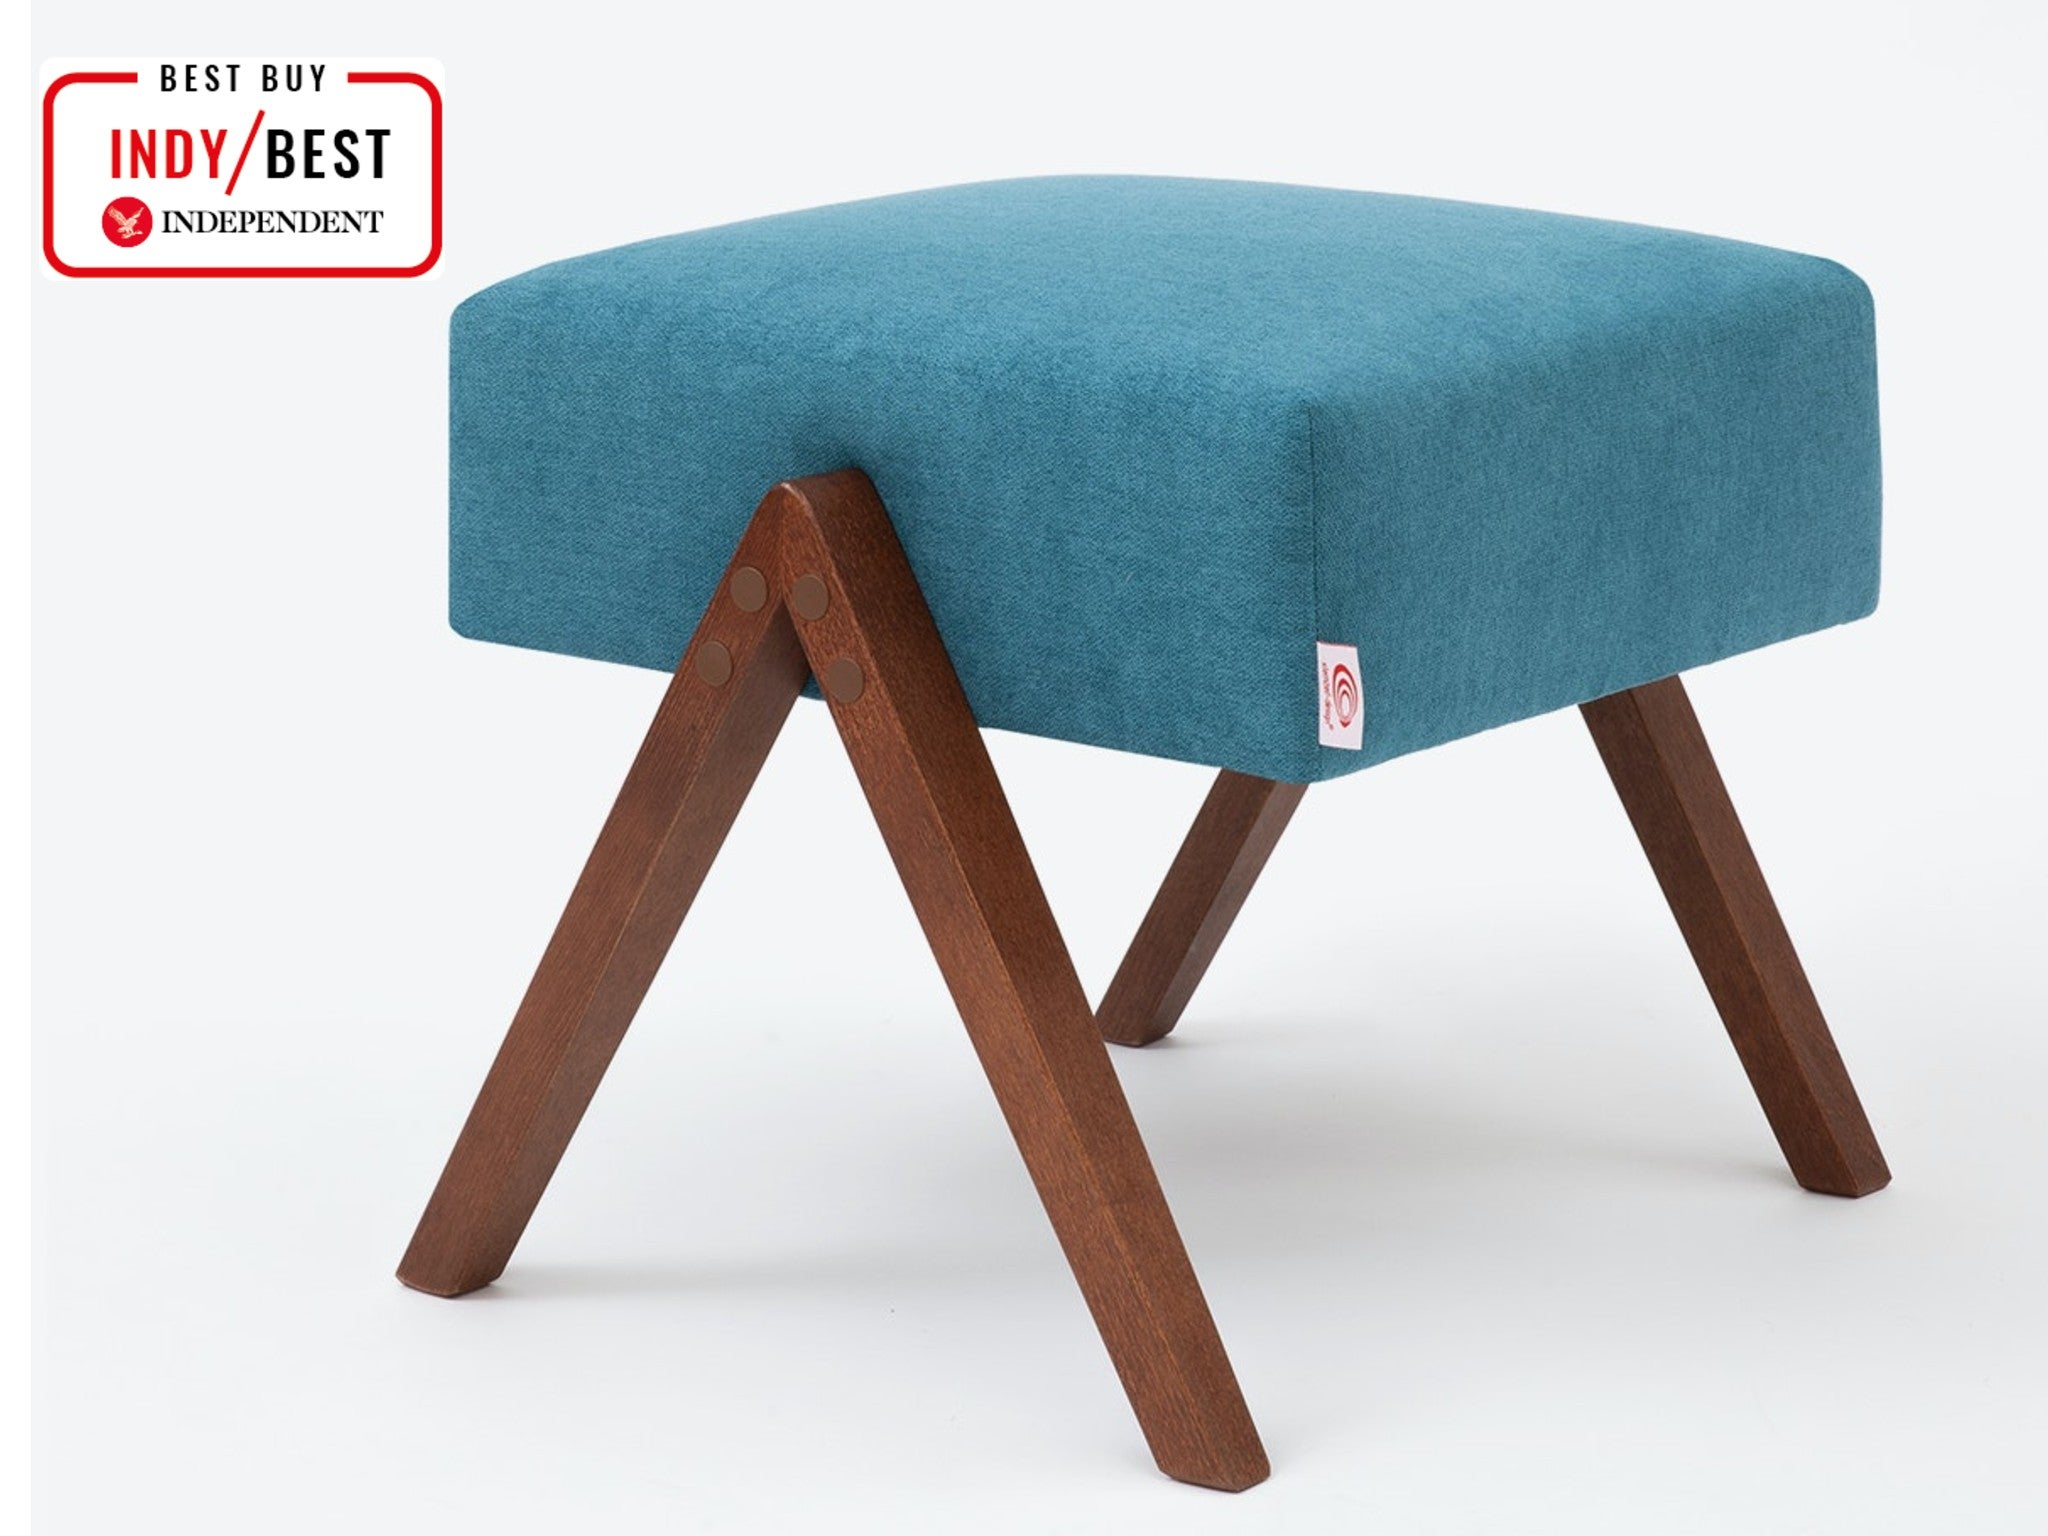 Sternzeit Design retrostar footstool, turquoise indybest.jpg